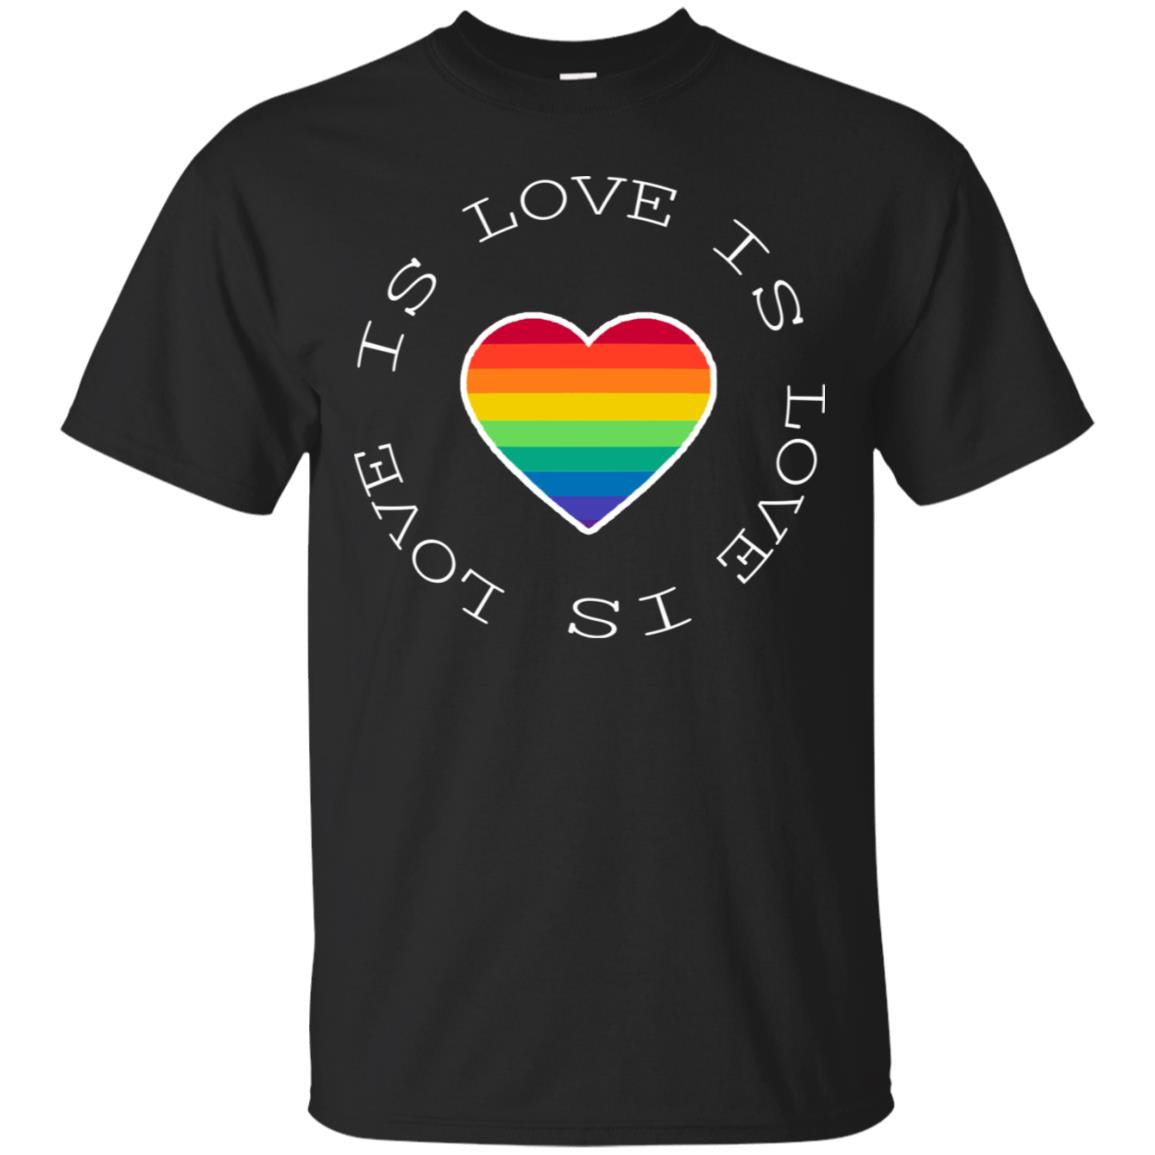 Love Is Love Rainbow Heart Lgbt Support Gift ShirtG200 Gildan Ultra Cotton T-Shirt